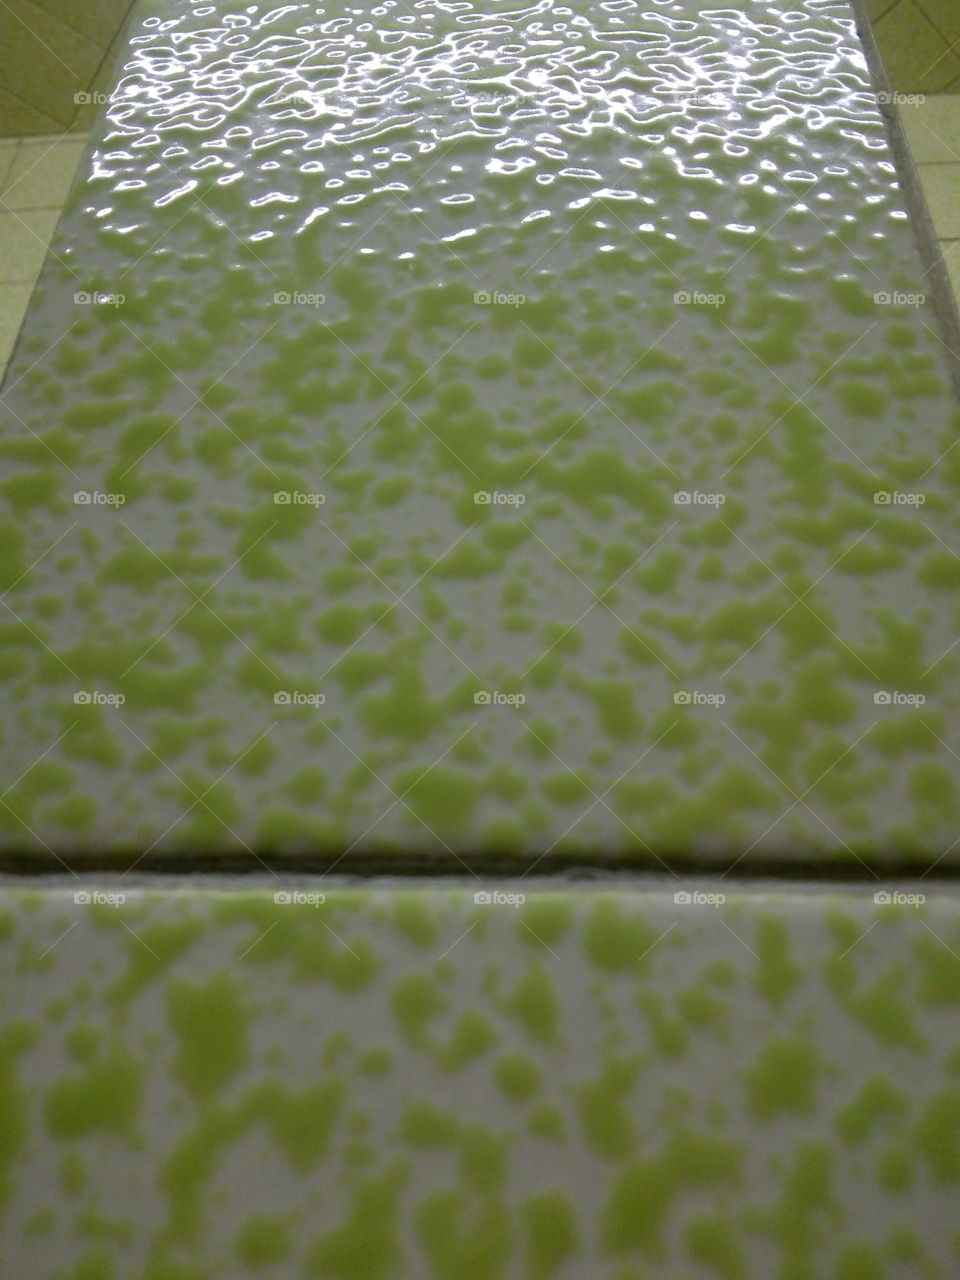 Textura y perspectivas capturada de tipo mosaico en color verde con blanco y luz al final